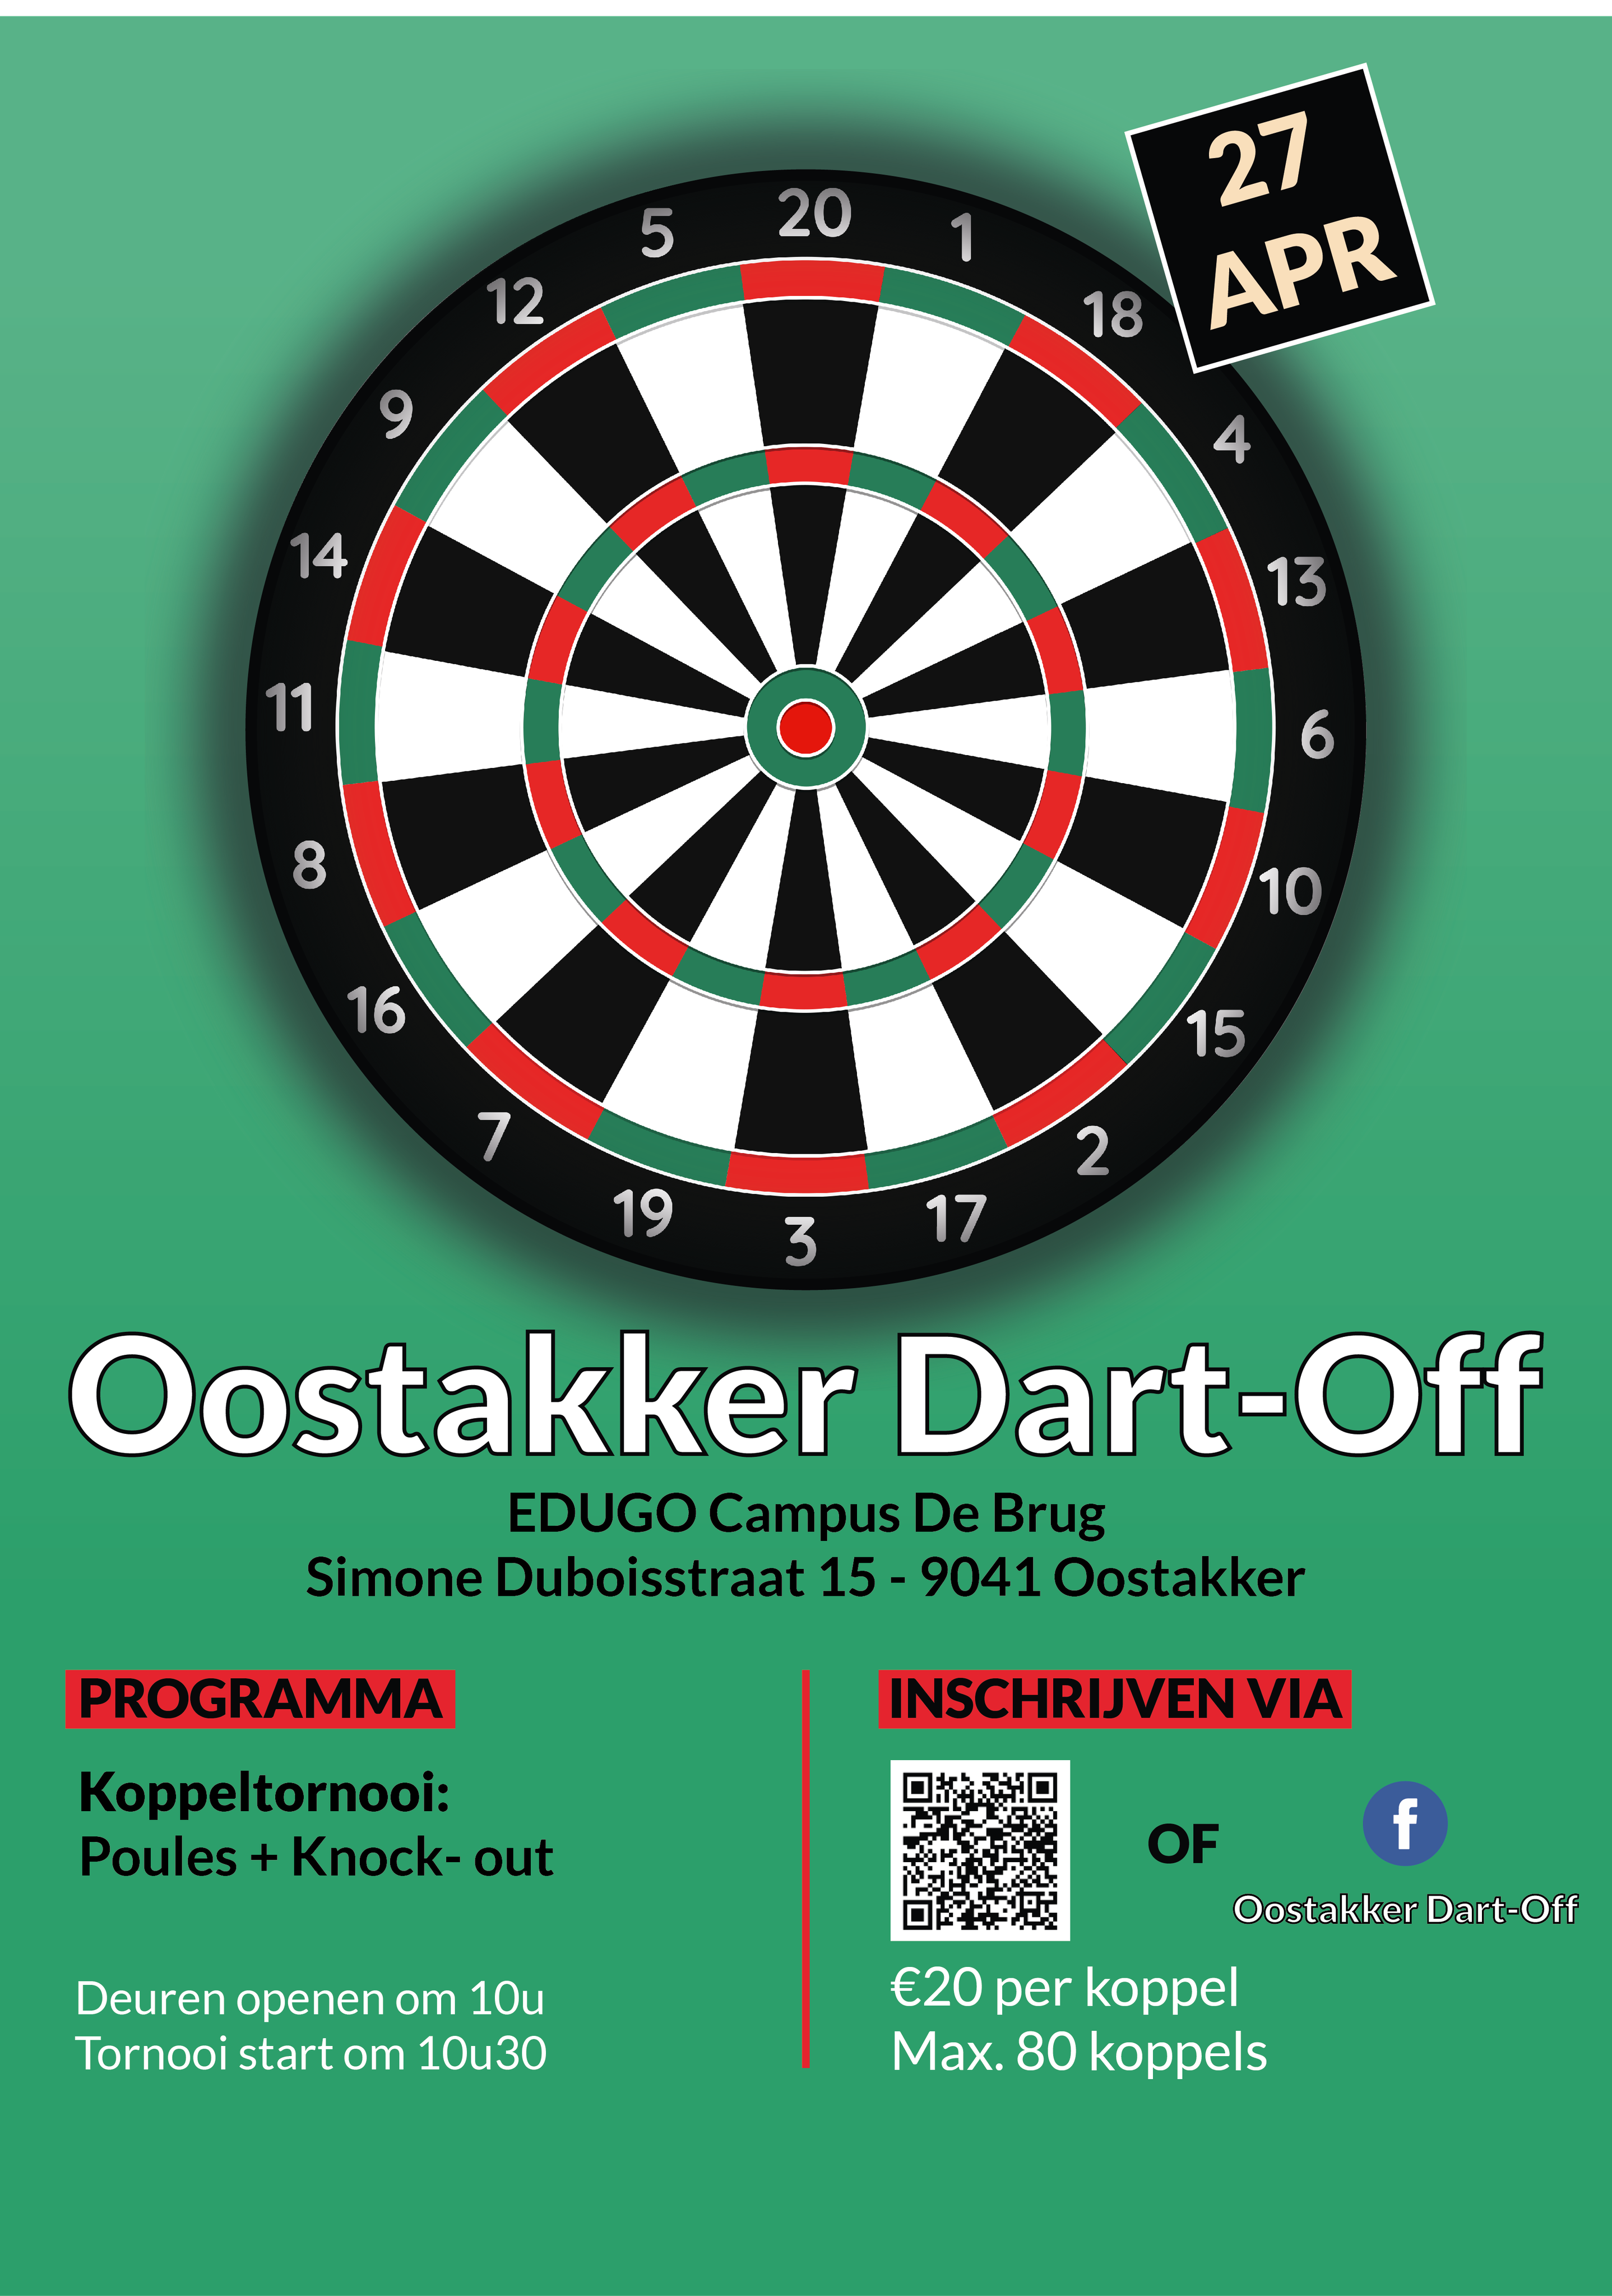 Oostakker dart-off